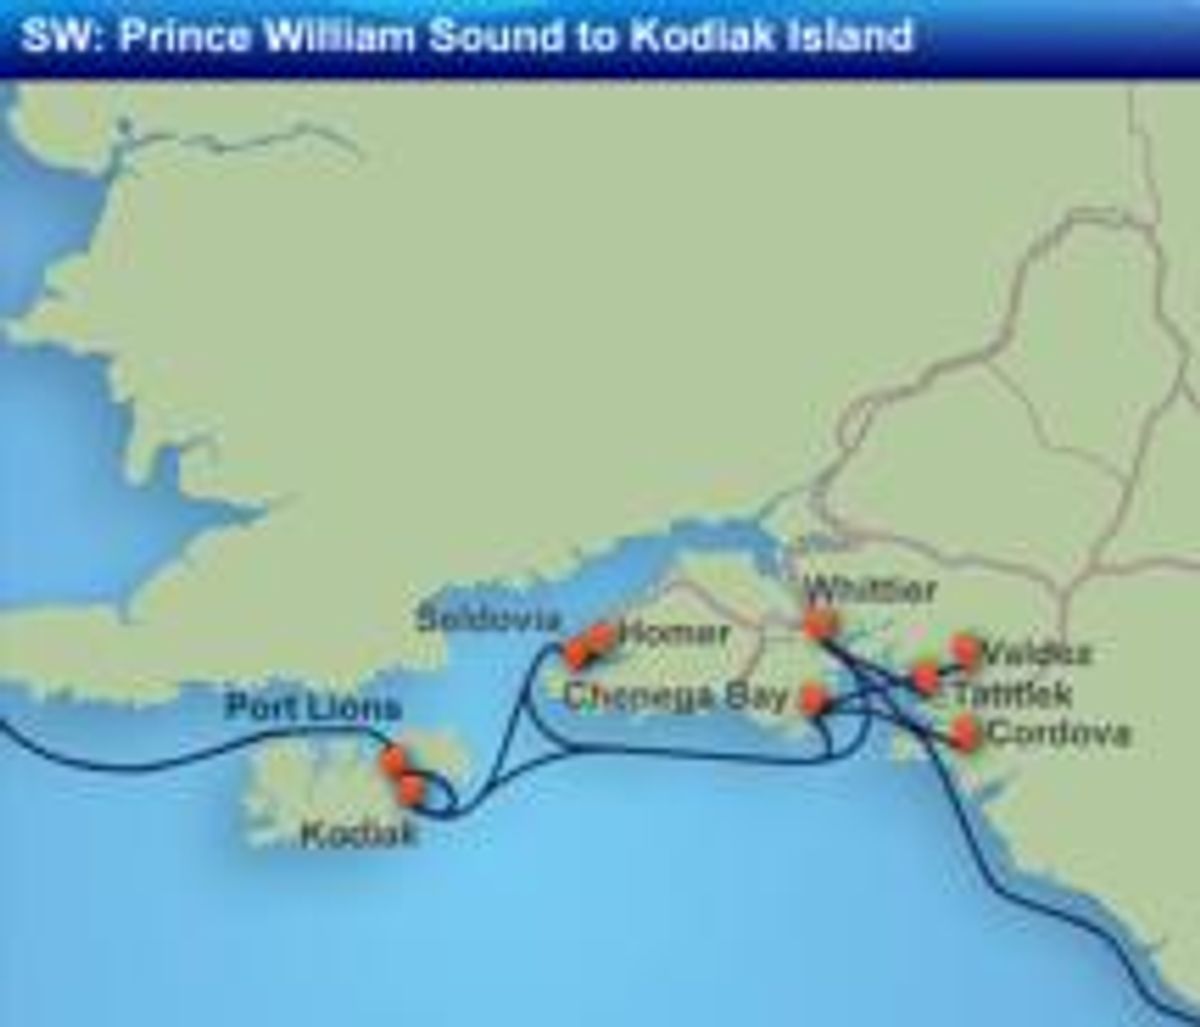 Alaska Marine Highway System Announces 2011 Schedule TravelAge West